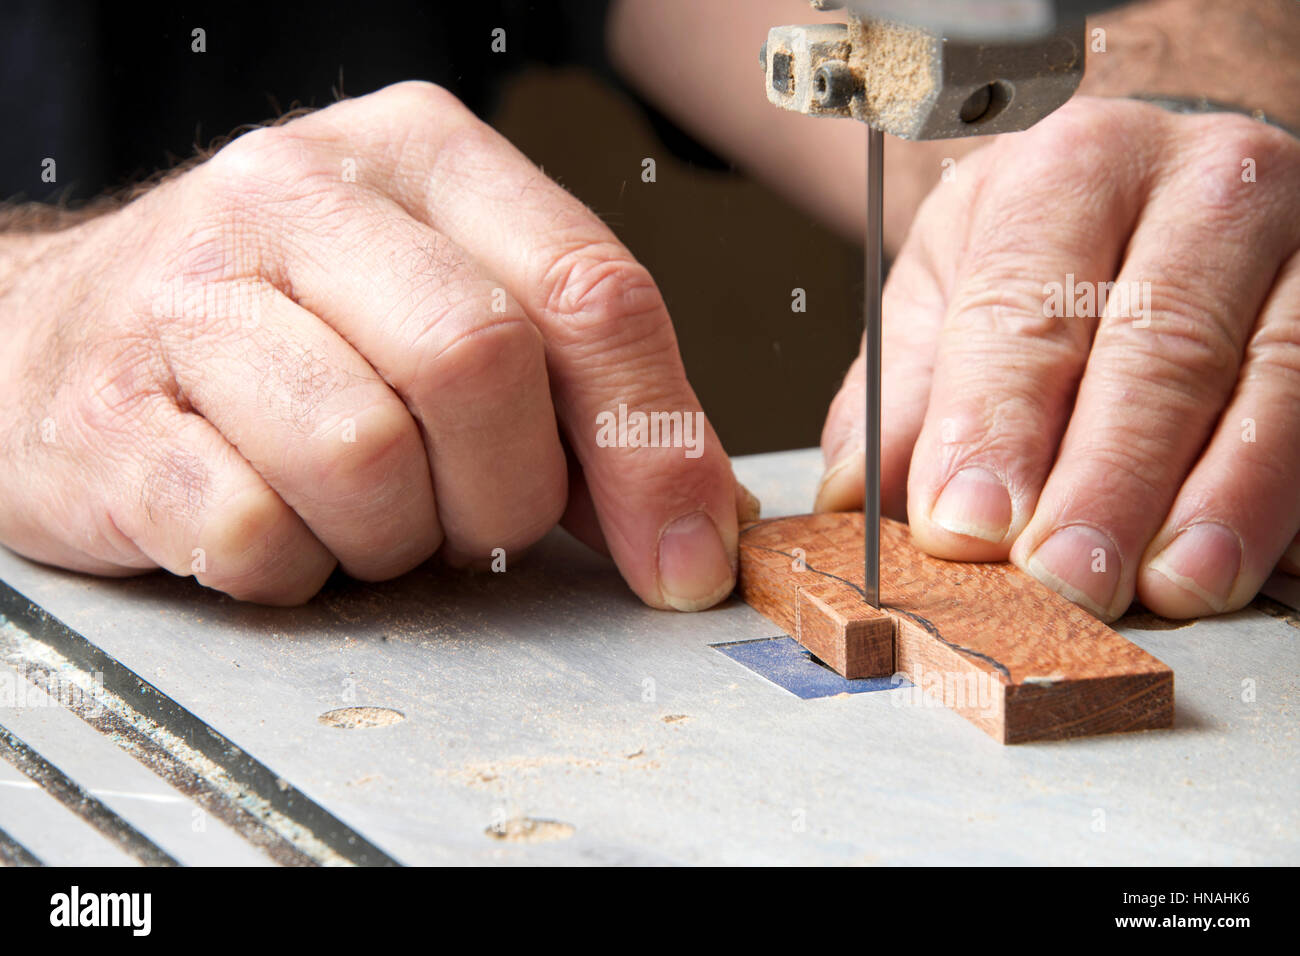 Männliche Hände halten ein kleines Stück Holz Präzisionsschneiden auf einer Tischplatte Jig sah. Sägespäne überall. Stockfoto